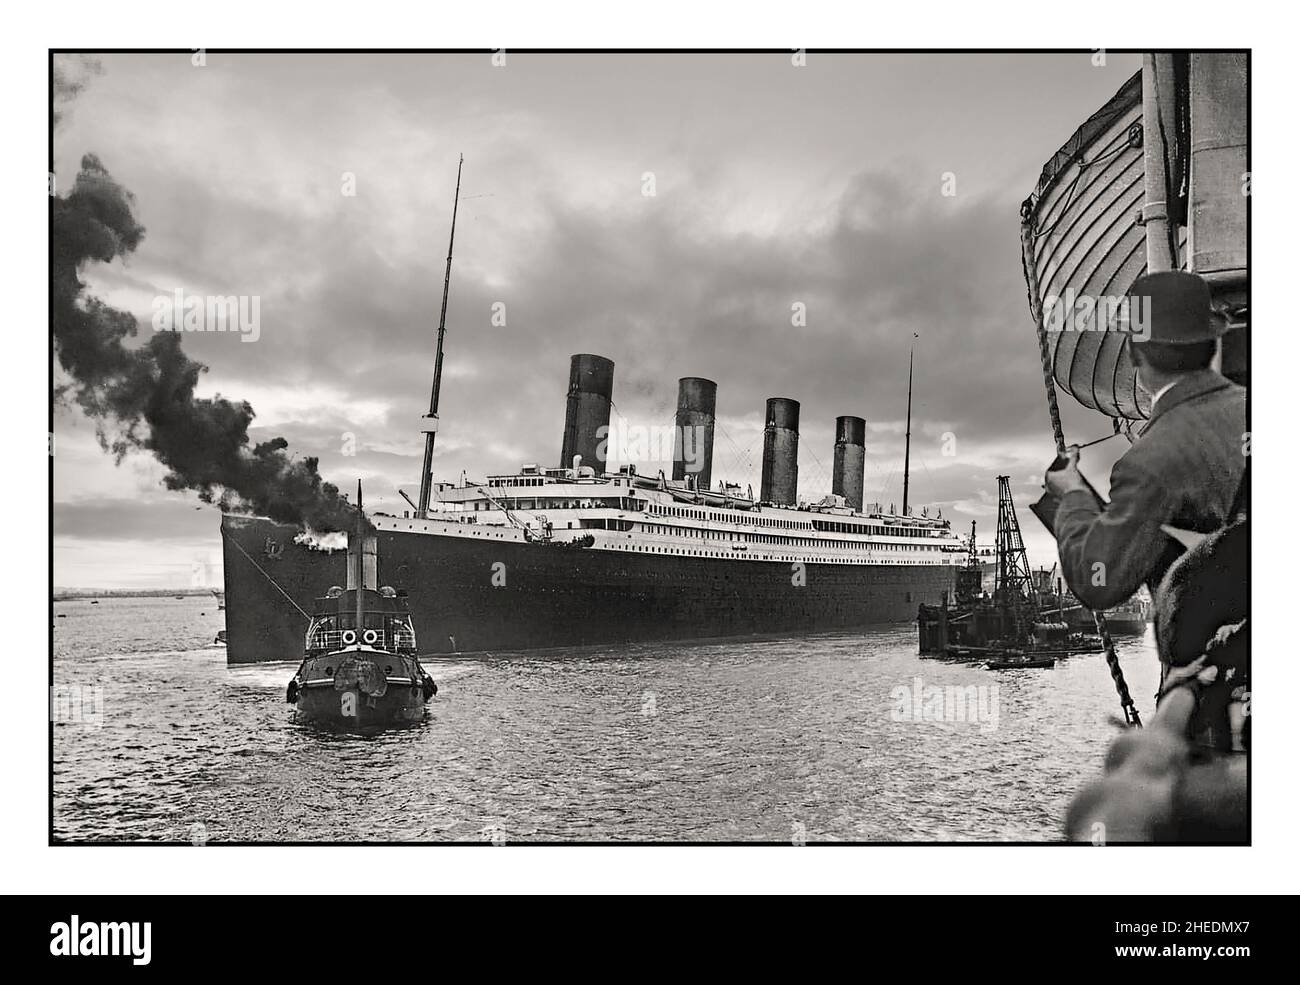 RMS Titanic 10th April 1912 Jungfernfahrt mit Pressefotograf im Vordergrund, die von Southampton UK aus auf ihre schicksalhafte Jungfernfahrt nach New York abfuhr, wo sie 5 Tage später am 15th. April mit einem riesigen Verlust an Menschenleben nach einem Eisberg auf tragische Weise sank Stockfoto